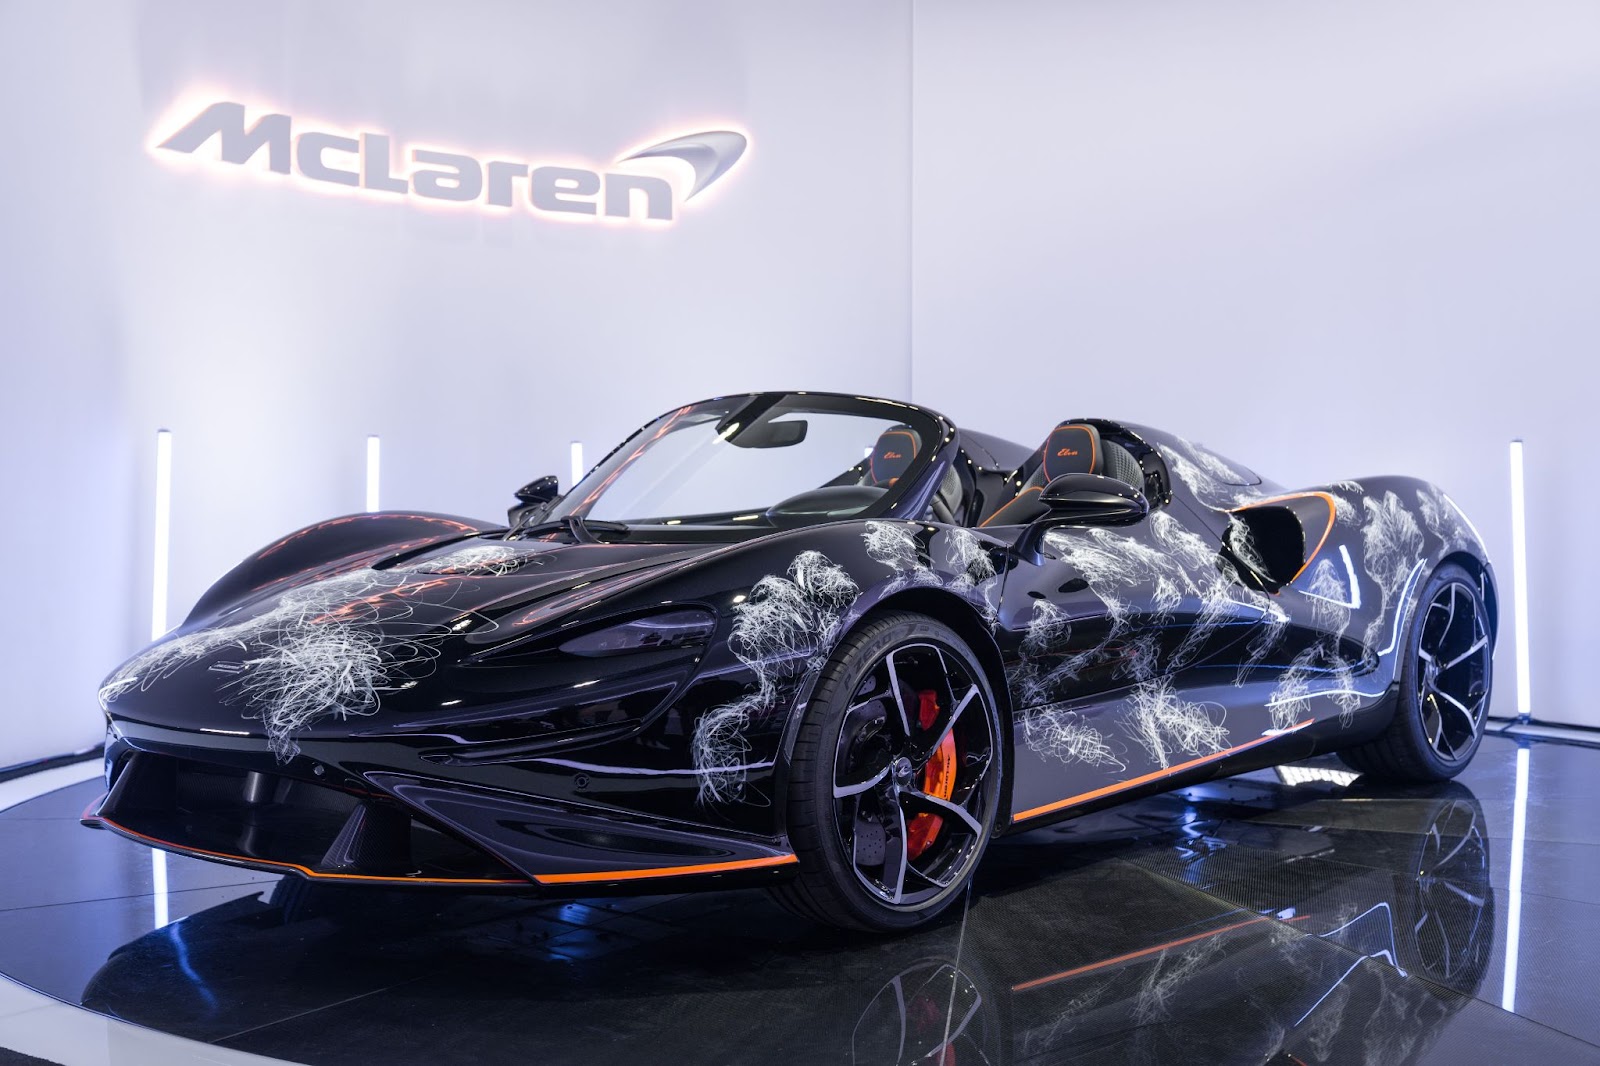 Siêu xe độc bản McLaren Elva của Minh Nhựa về Việt Nam: Giá khoảng 143 tỷ đồng - Ảnh 3.